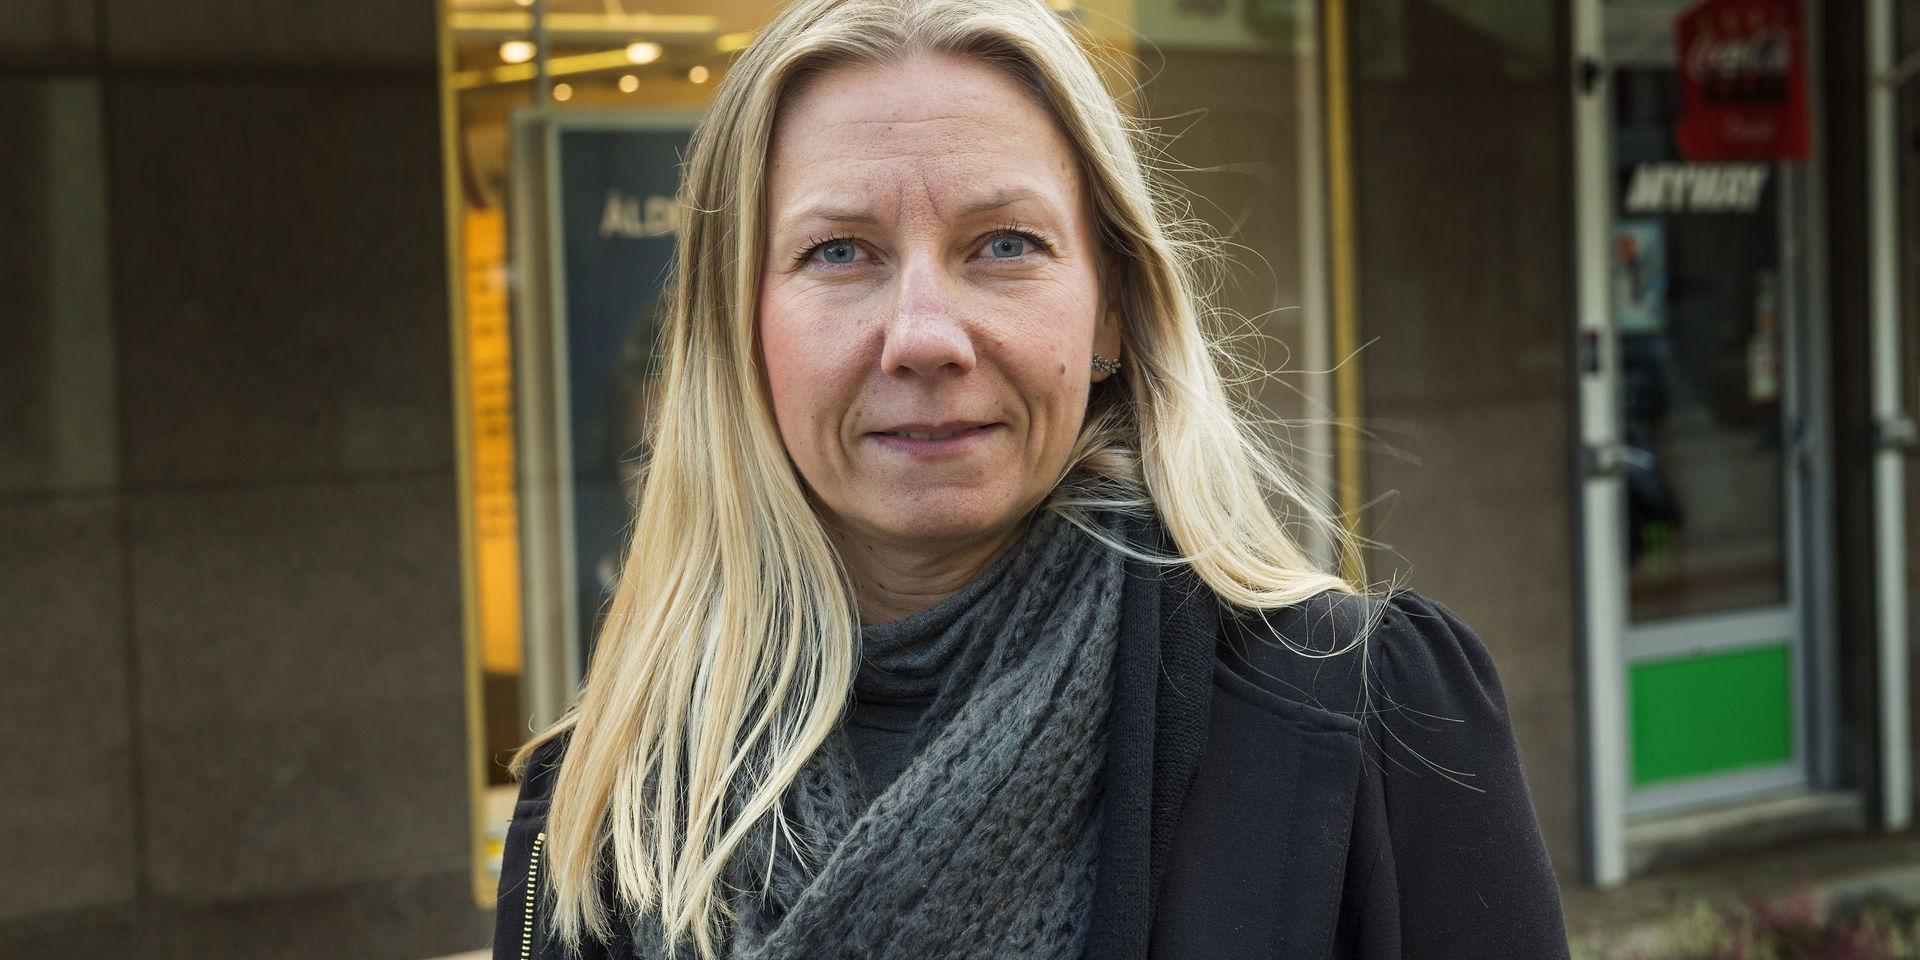 Sveriges byggindustrier jobbar mot sexism på arbetsplatser och på utbildningar, menar Pernilla Irewährn.